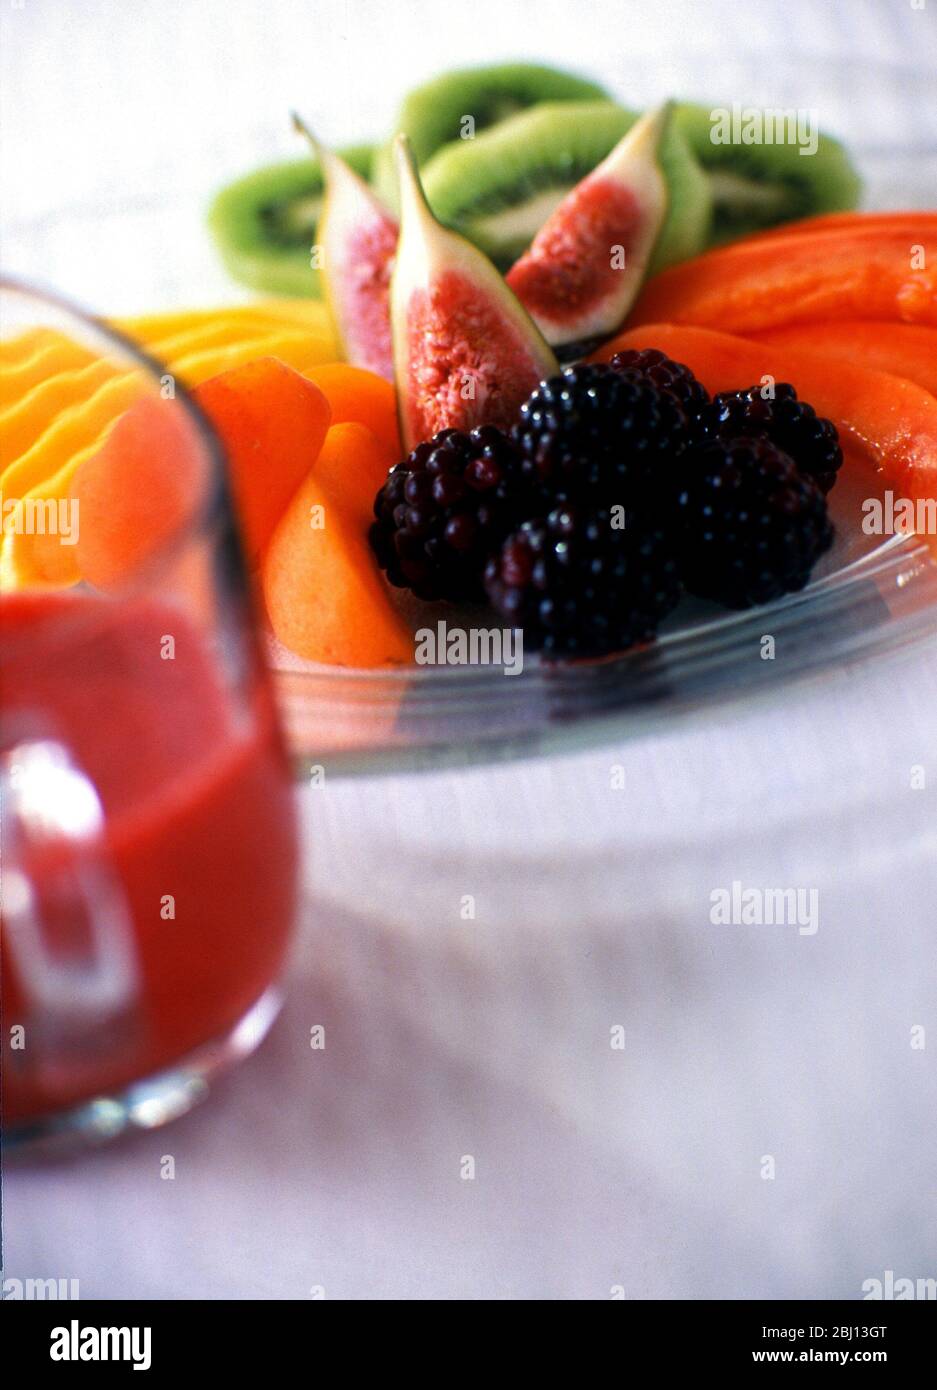 Attraktiv angerichtet geschnittenes und zubereitetes Obst auf Glasplatte, serviert als Dessert - Stockfoto